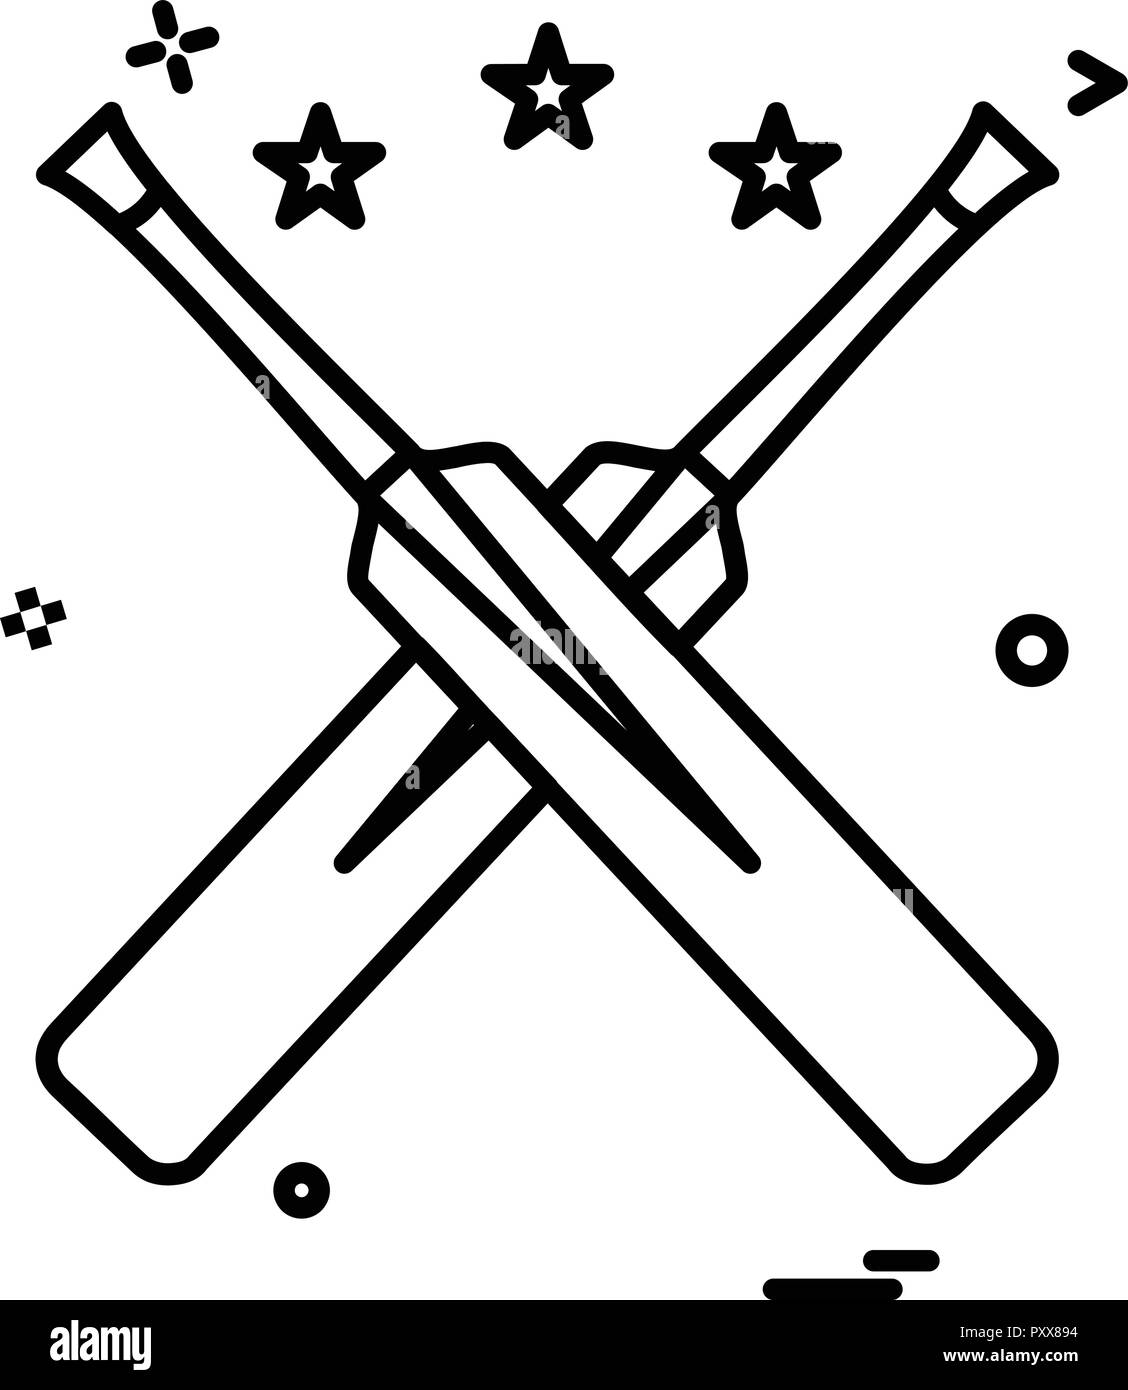 Les chauves-souris chauve-souris vecteur conception icône cricket star Illustration de Vecteur